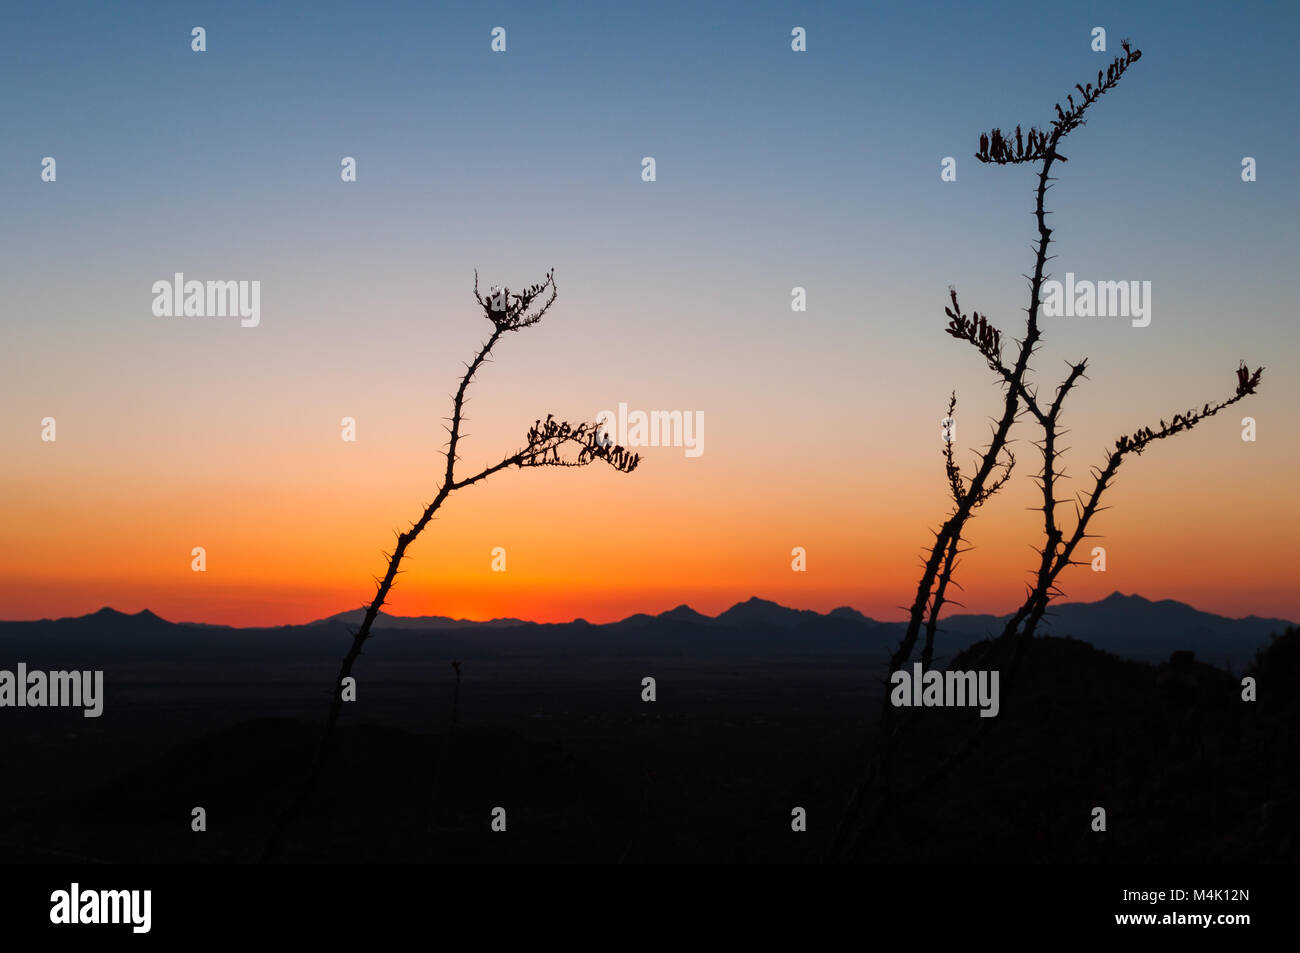 Ocotillo Pflanzen und Berge im Silhouette nach Sonnenuntergang, Saguaro National Park, Sonoran Wüste, Arizona, USA Stockfoto